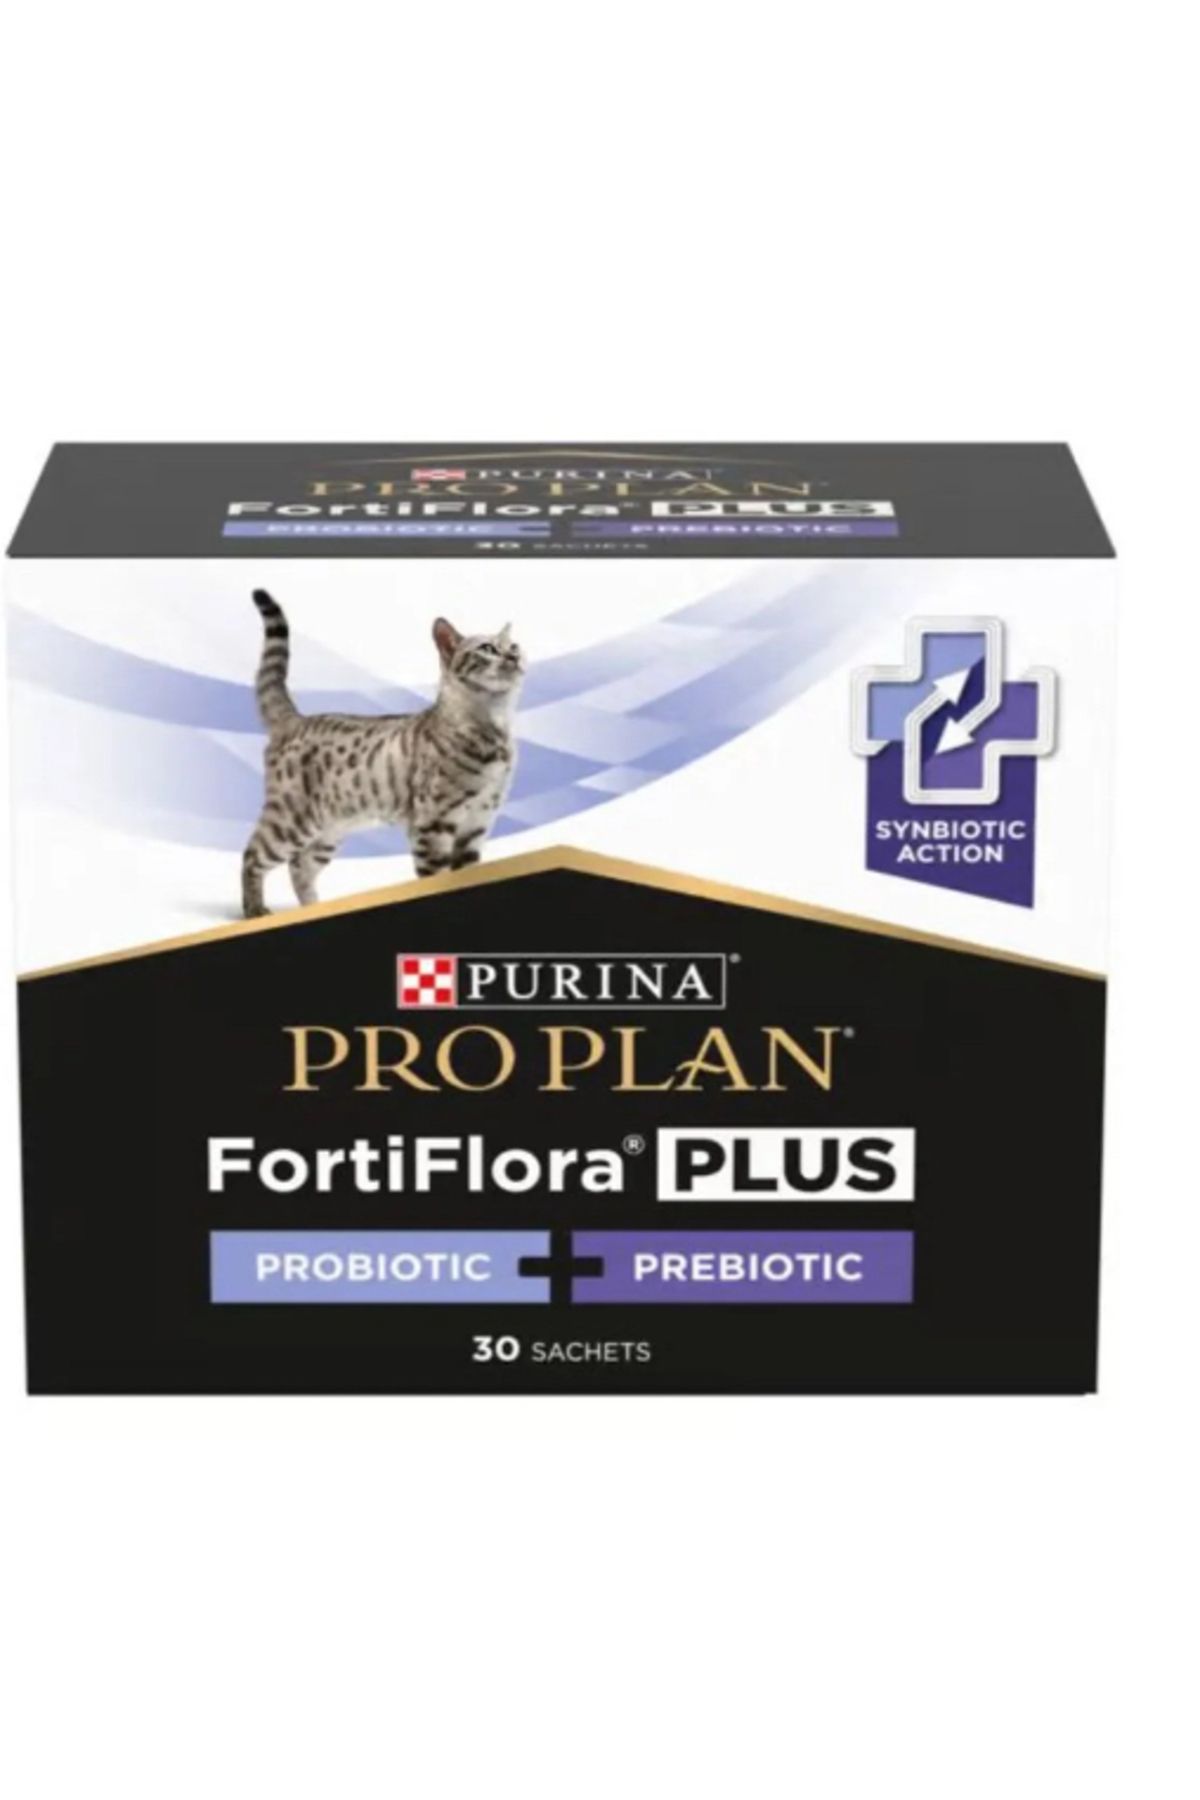 Pro Plan Fortiflora Kediler için probiyotik prebiotik takviyesi (30 şasi)30 x1.5 gr